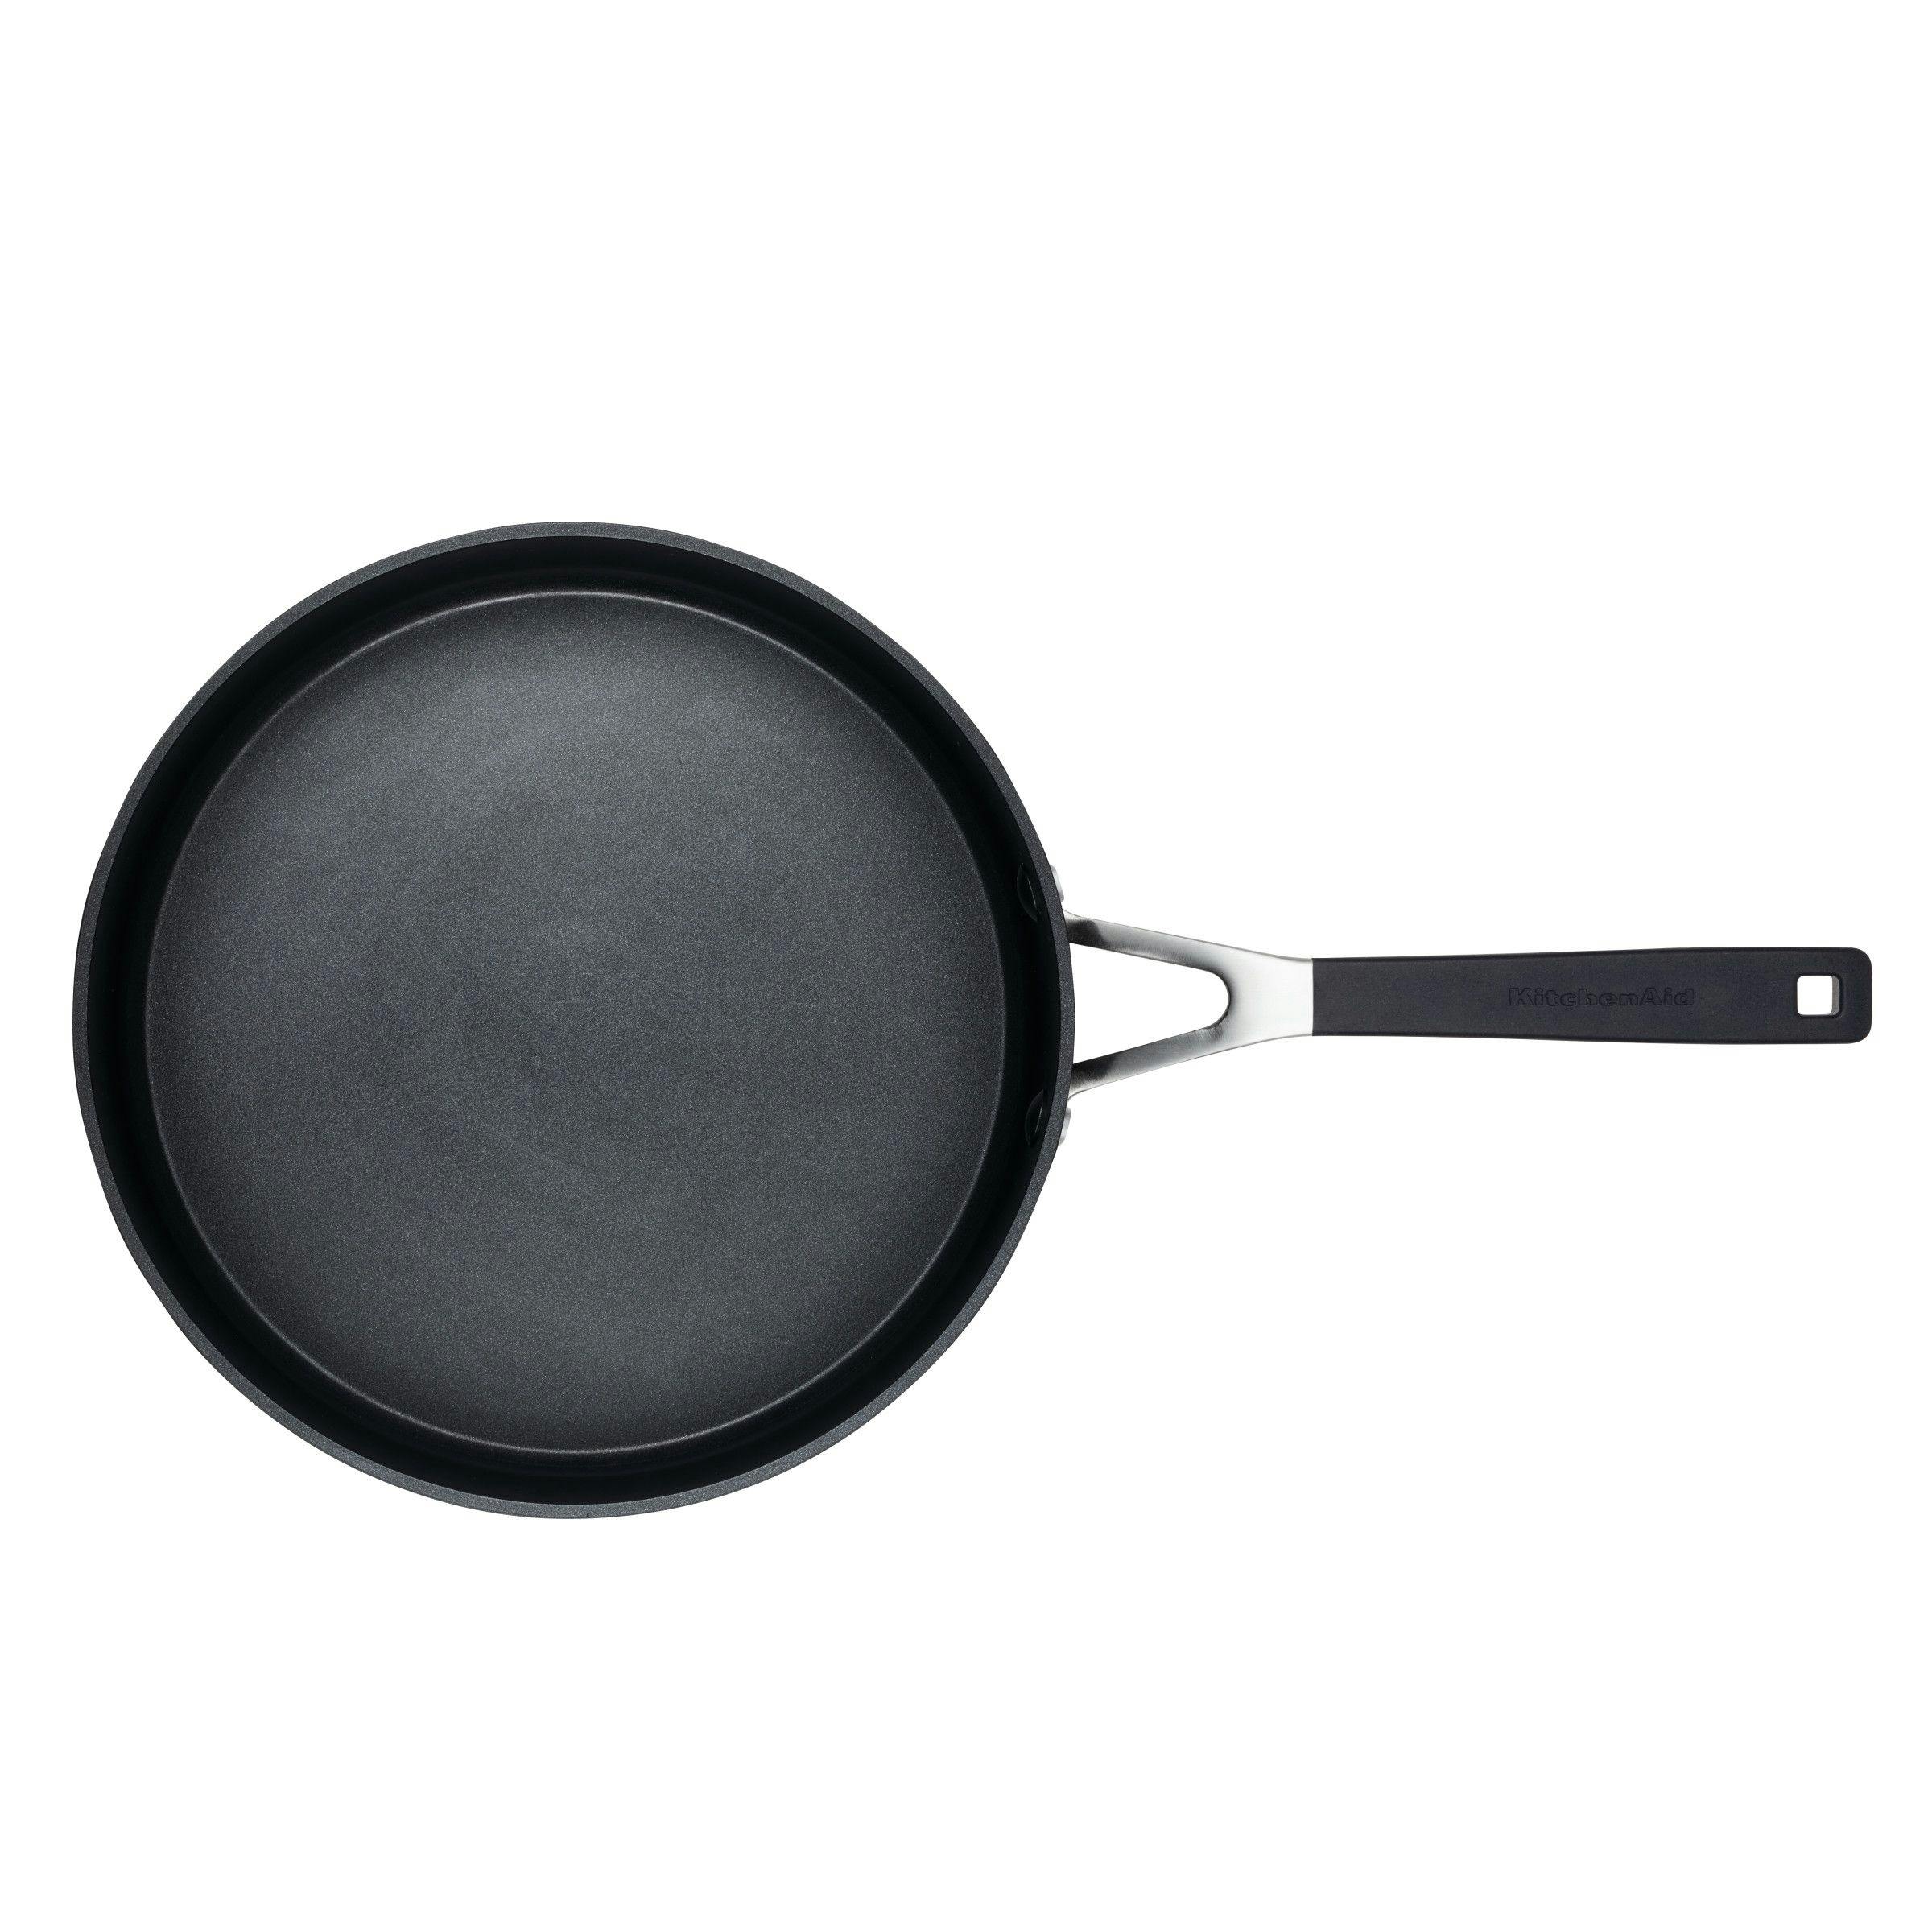 KitchenAid Hard Anodized Nonstick Sauté Pan with Lid, 3-Quart, Onyx Black